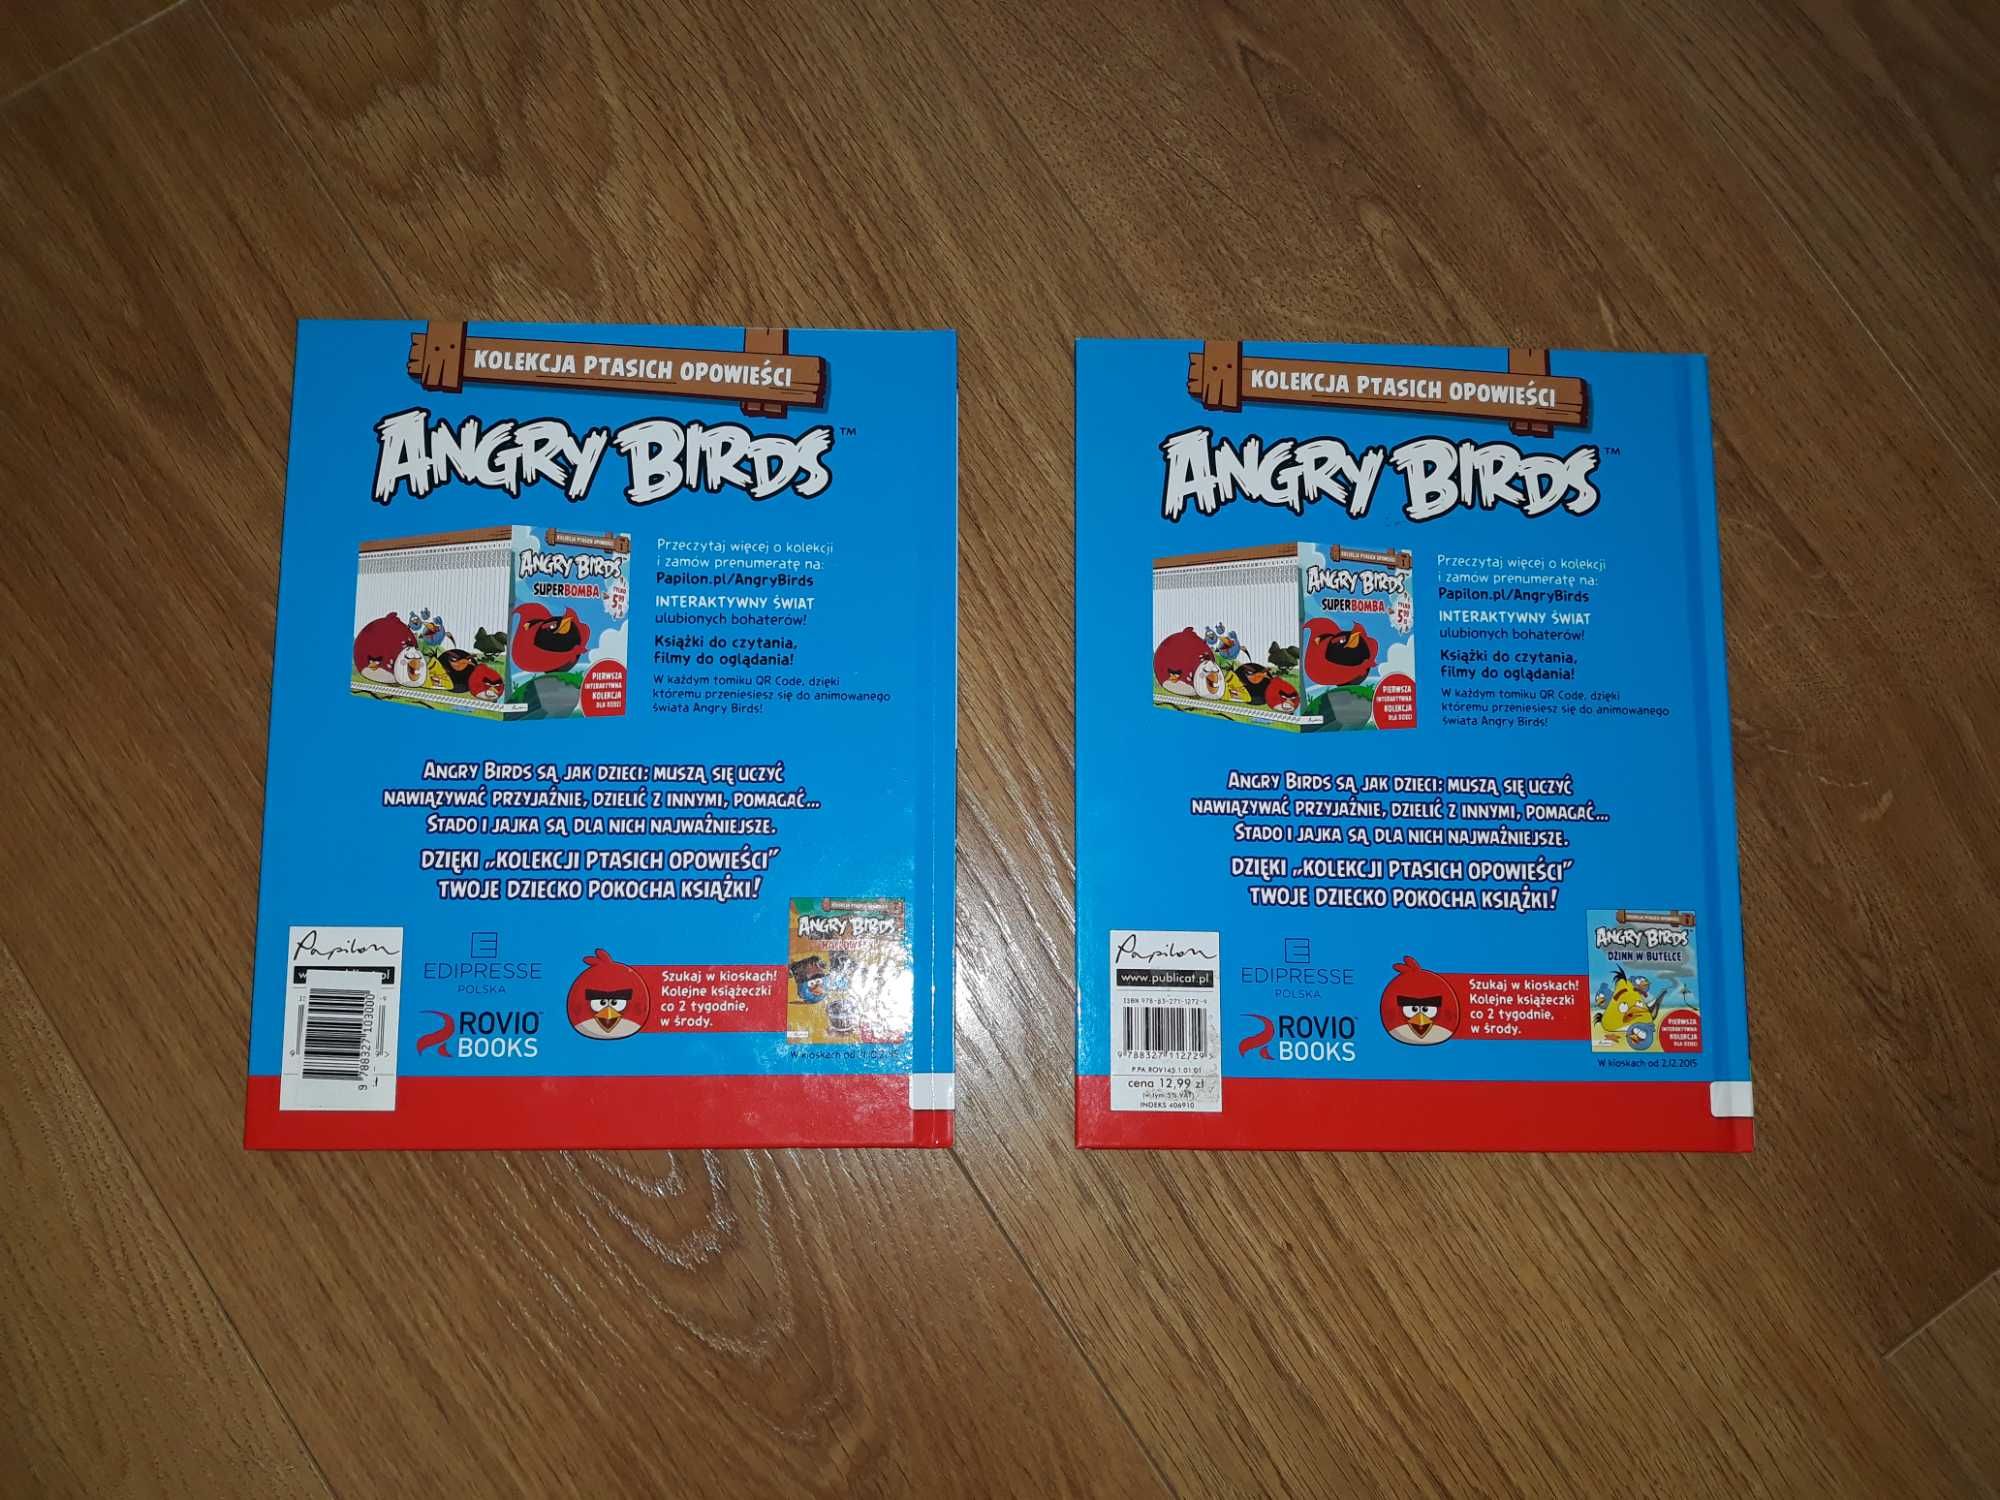 Angry Birds 2sztuki za 8zł Nowe